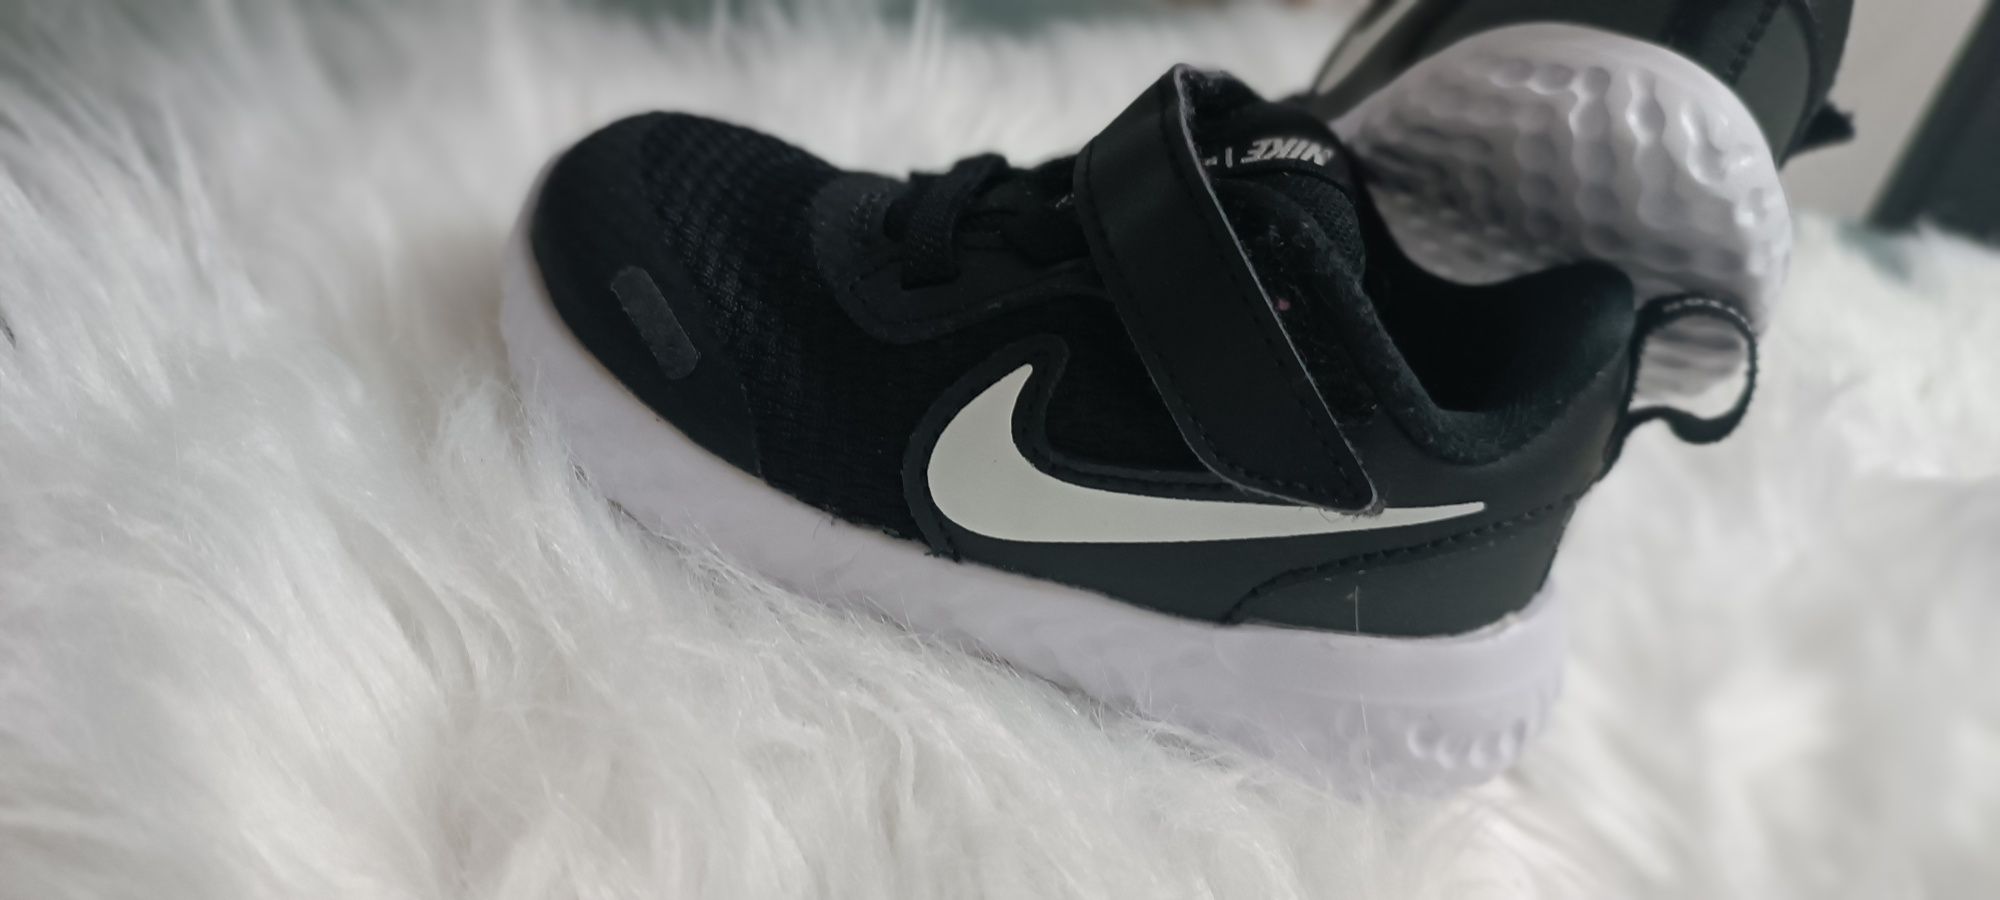 Sapatilhas Nike pretas e branco tam 22